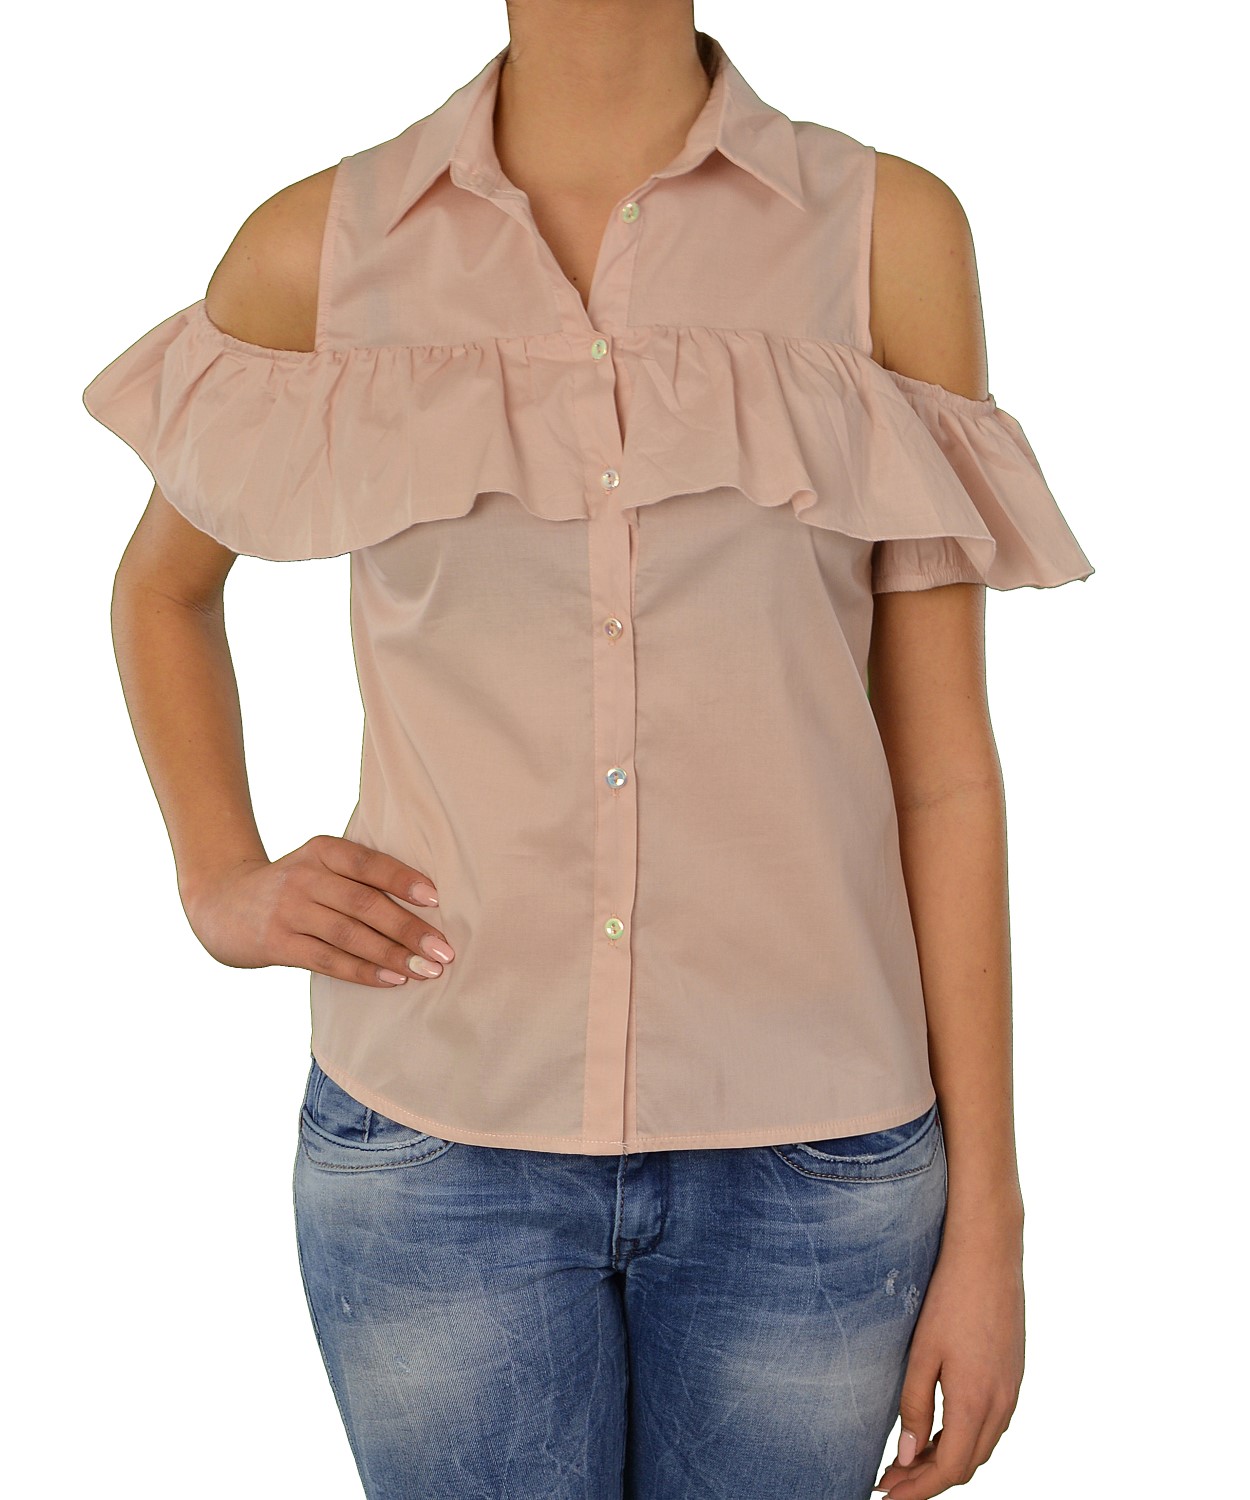 Γυναικείο πουκάμισο Lipsy ροζ με βολάν 1170505